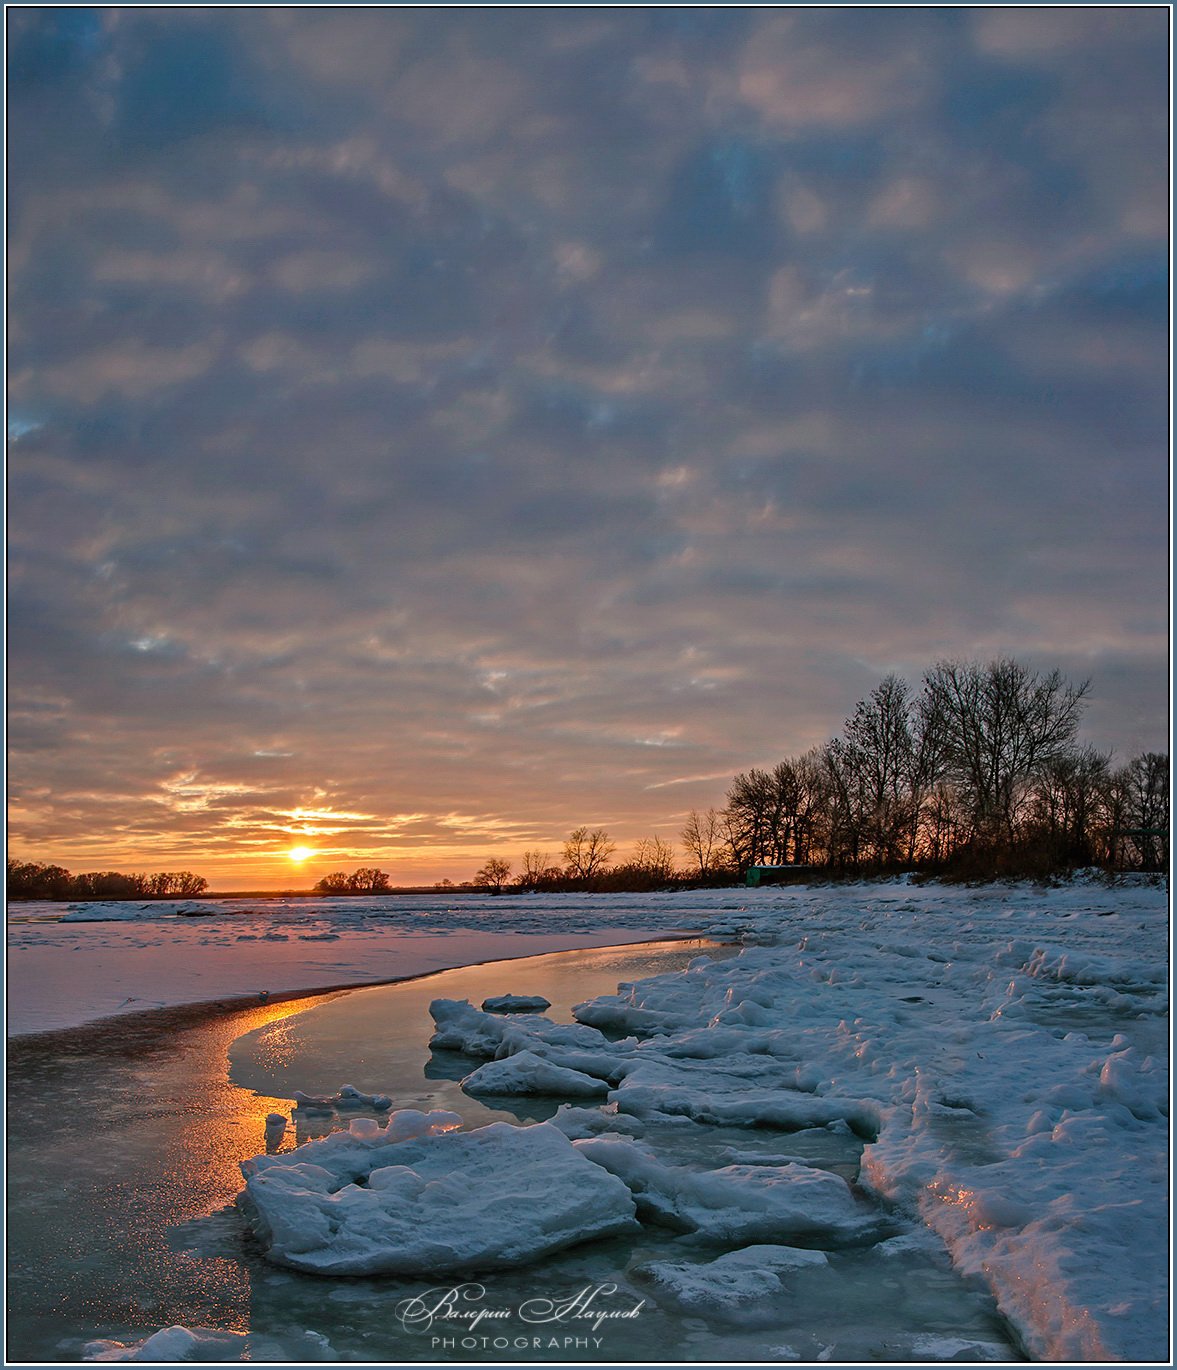 зима, утро, снег, лёд, река, Валерий Наумов